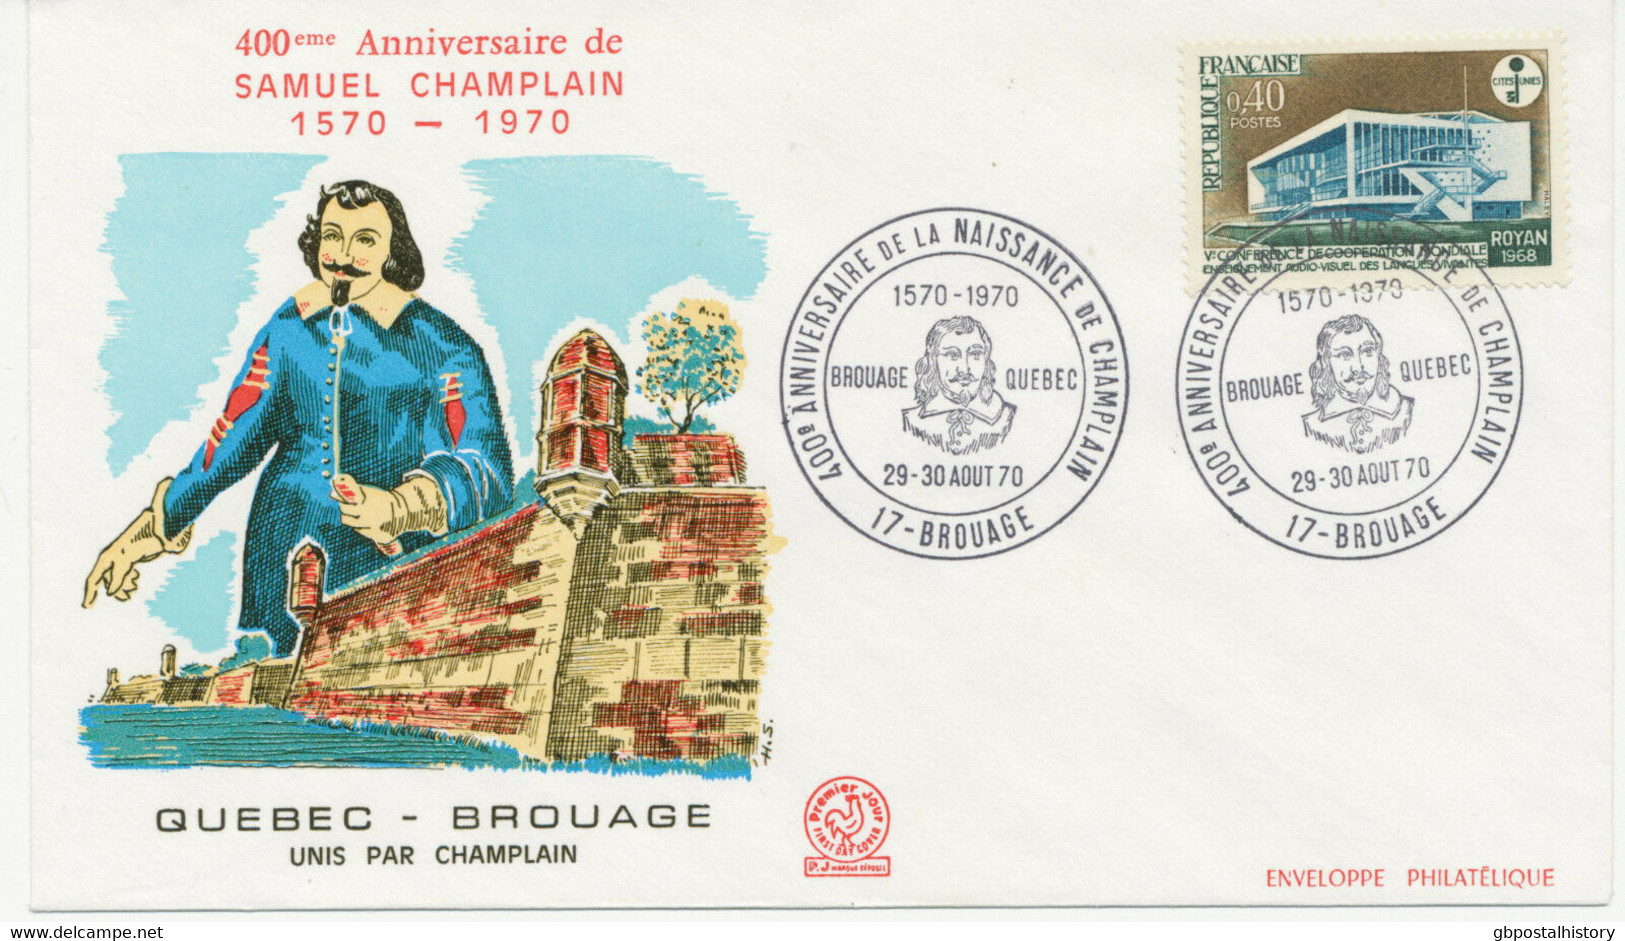 29-30 AOUT 70 400e ANNIVERSAIRE DE LA NAISSANCE DE CHAMPLAIN / 1570-1970 BROUAGE QUEBEC / 17-BROUAGE“, Selt. SST Brief - Covers & Documents